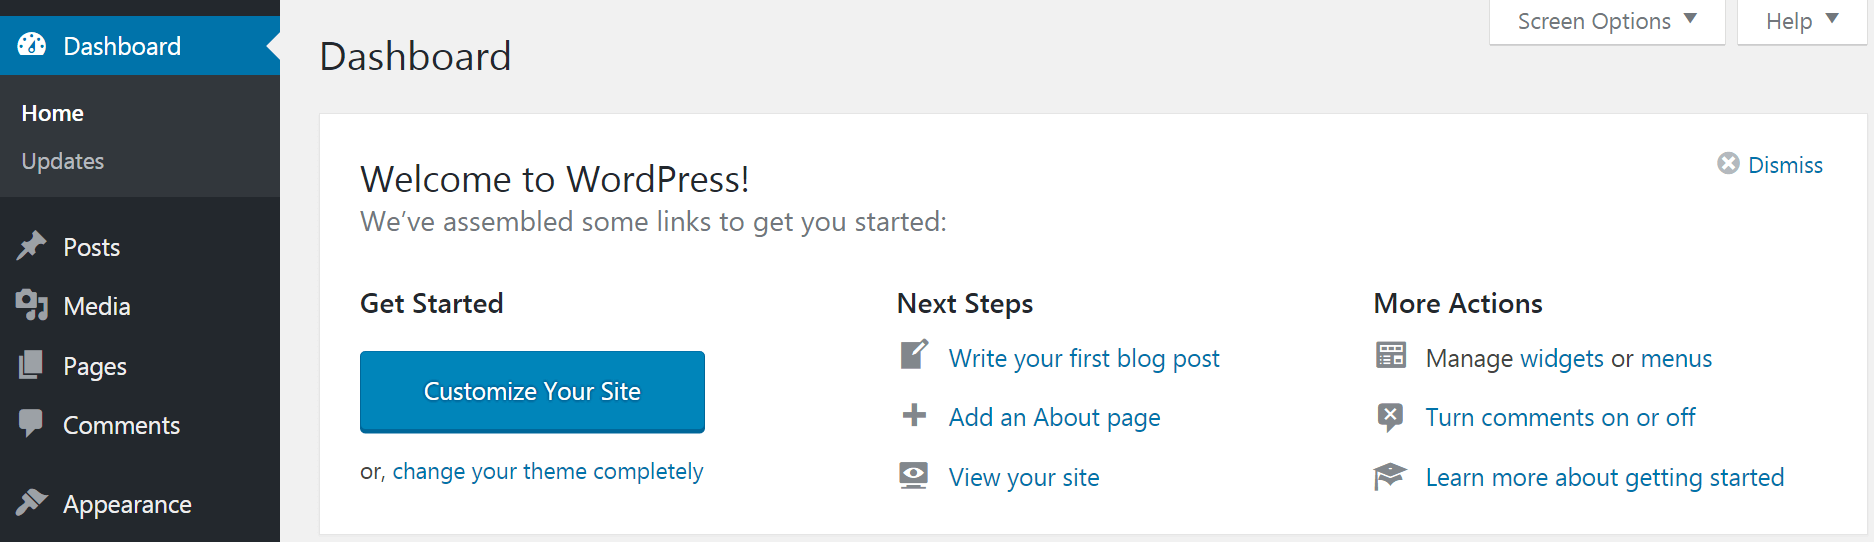 Das Willkommens-Widget im WordPress-Dashboard.